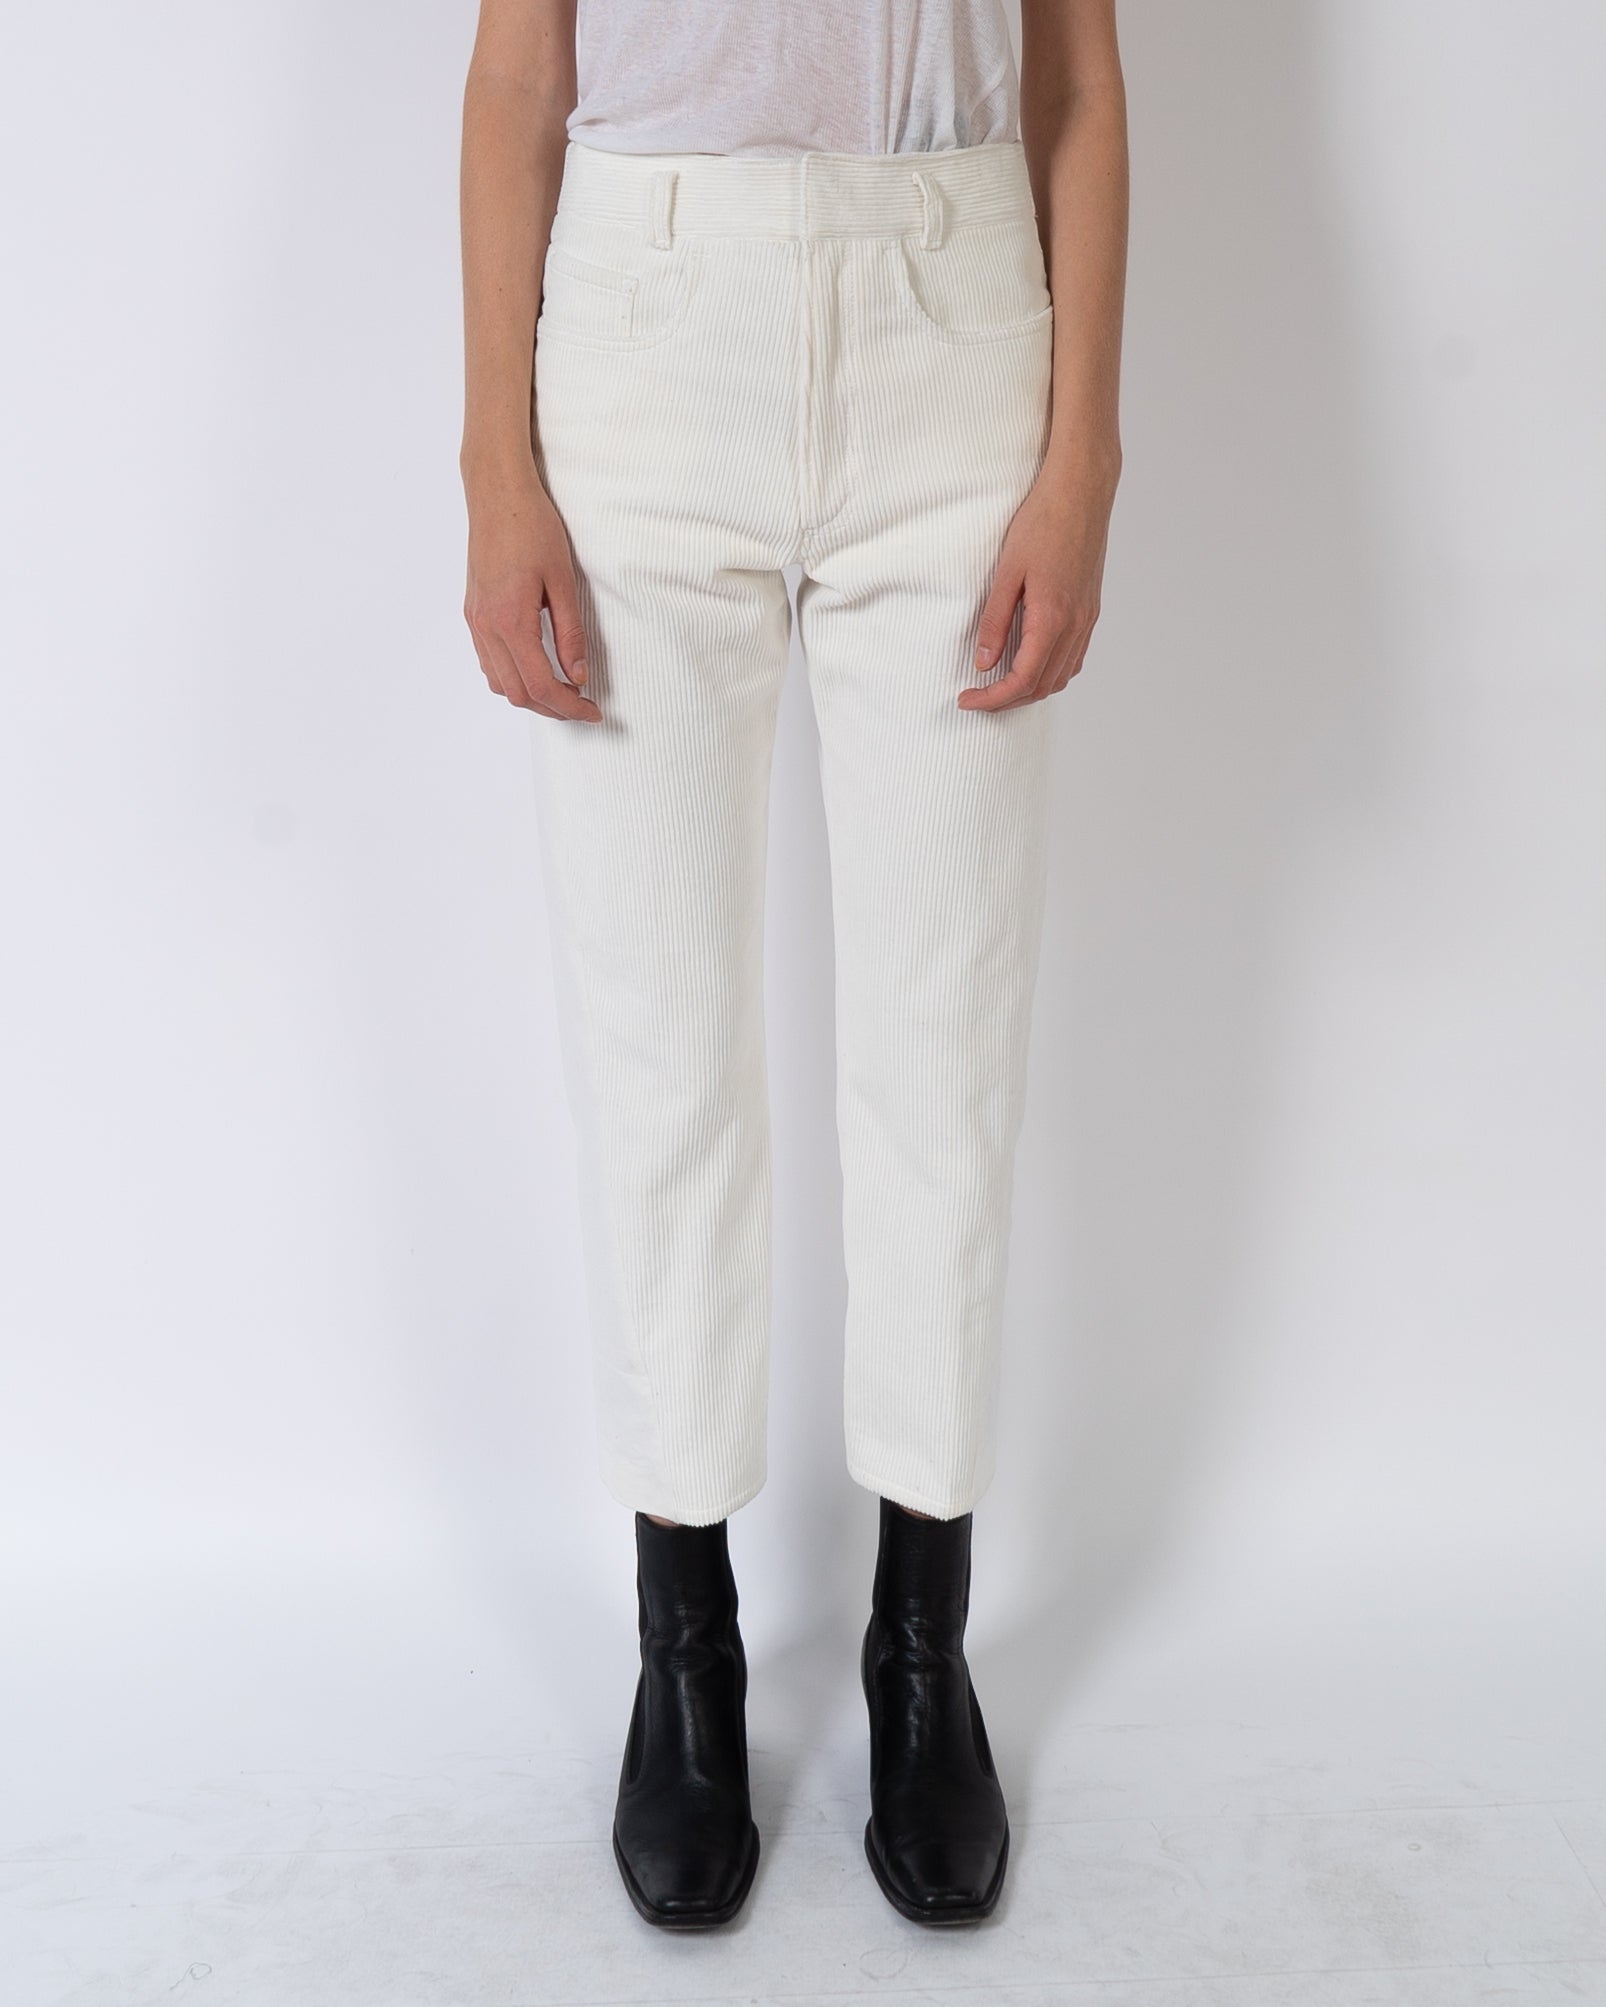 FW19 White Two-Tone Trousers